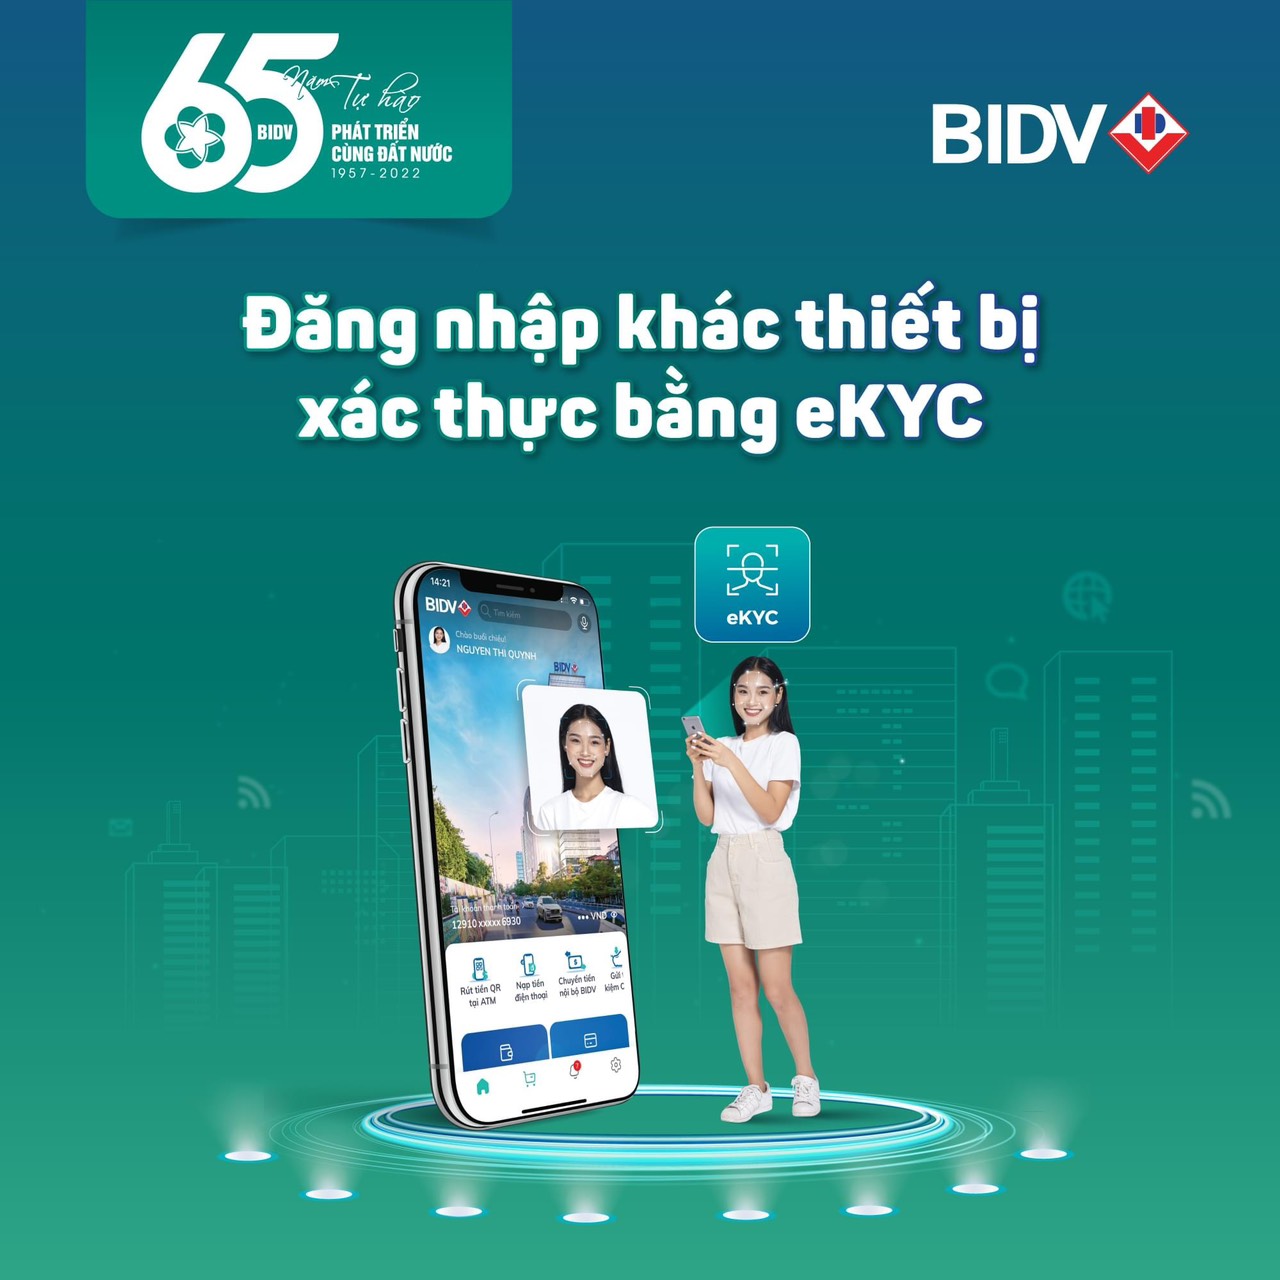 đăng nhập BIDV SMARTBANKING trên thiết bị khác sẽ không phải kích hoạt lại nữa - Đảng ủy khối cơ quan và doanh nghiệp tỉnh Yên Bái